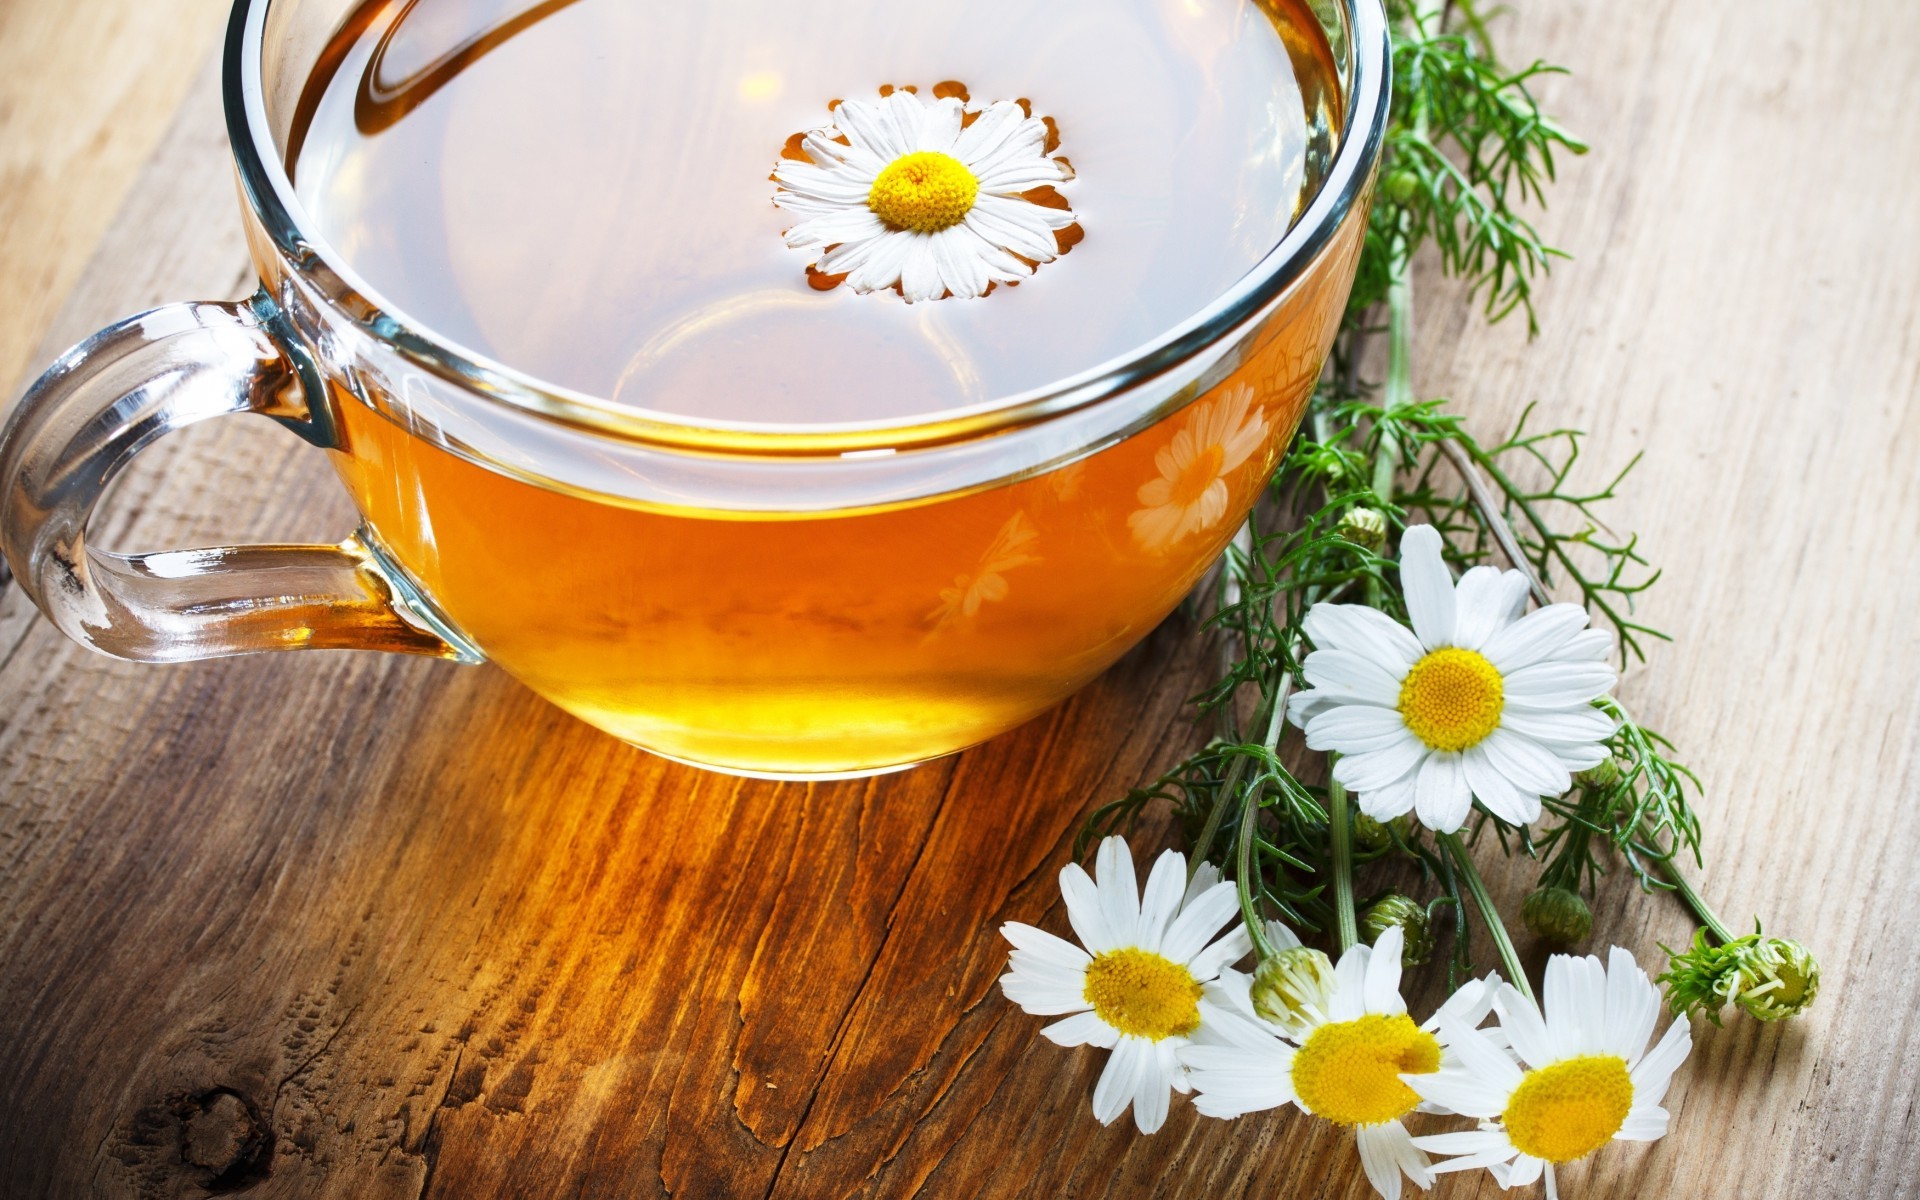 Фото Чашка из прозрачного стекла с чаем и цветком ромашки в чае стоит на столе. Рядом лежит букет из четырех ромашек